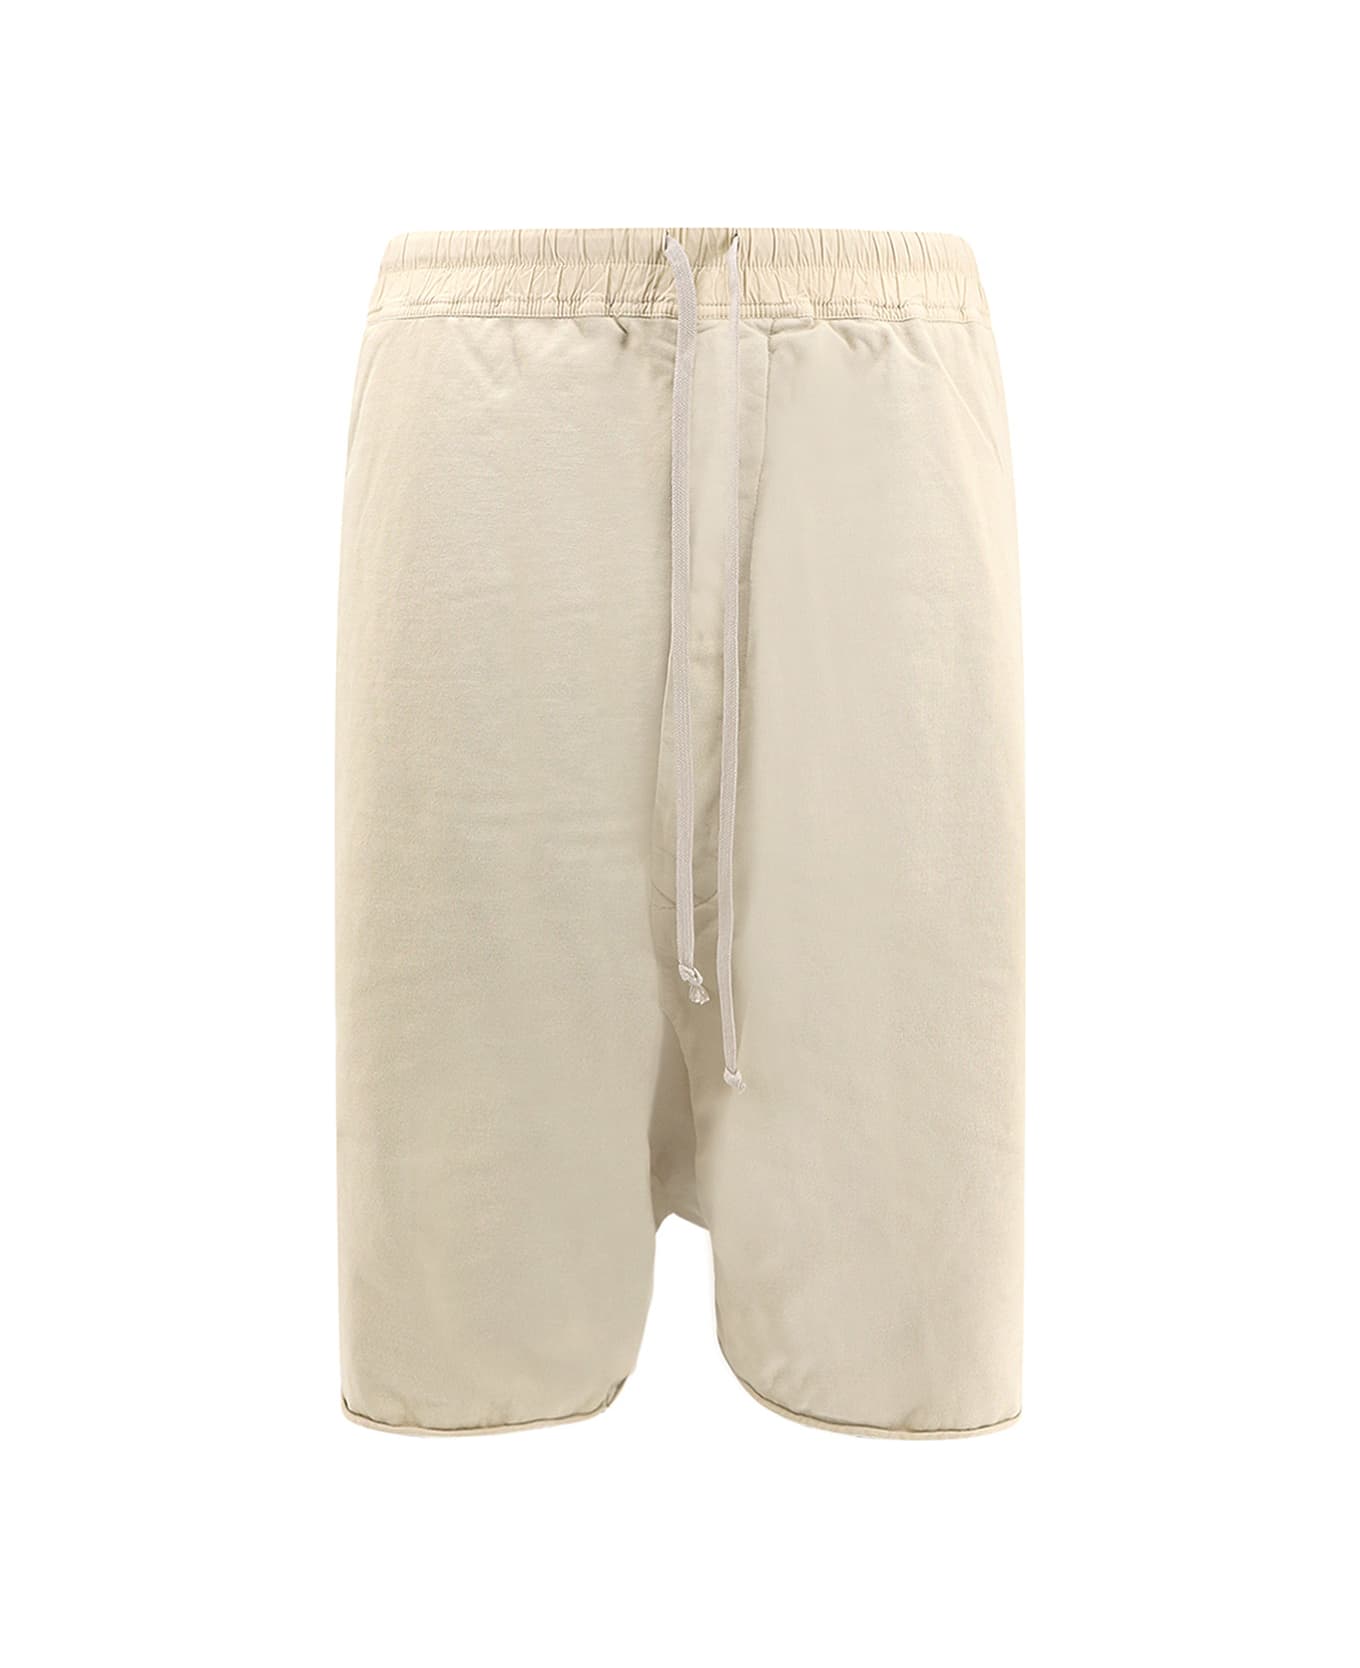 DRKSHDW Bermuda Shorts - Beige